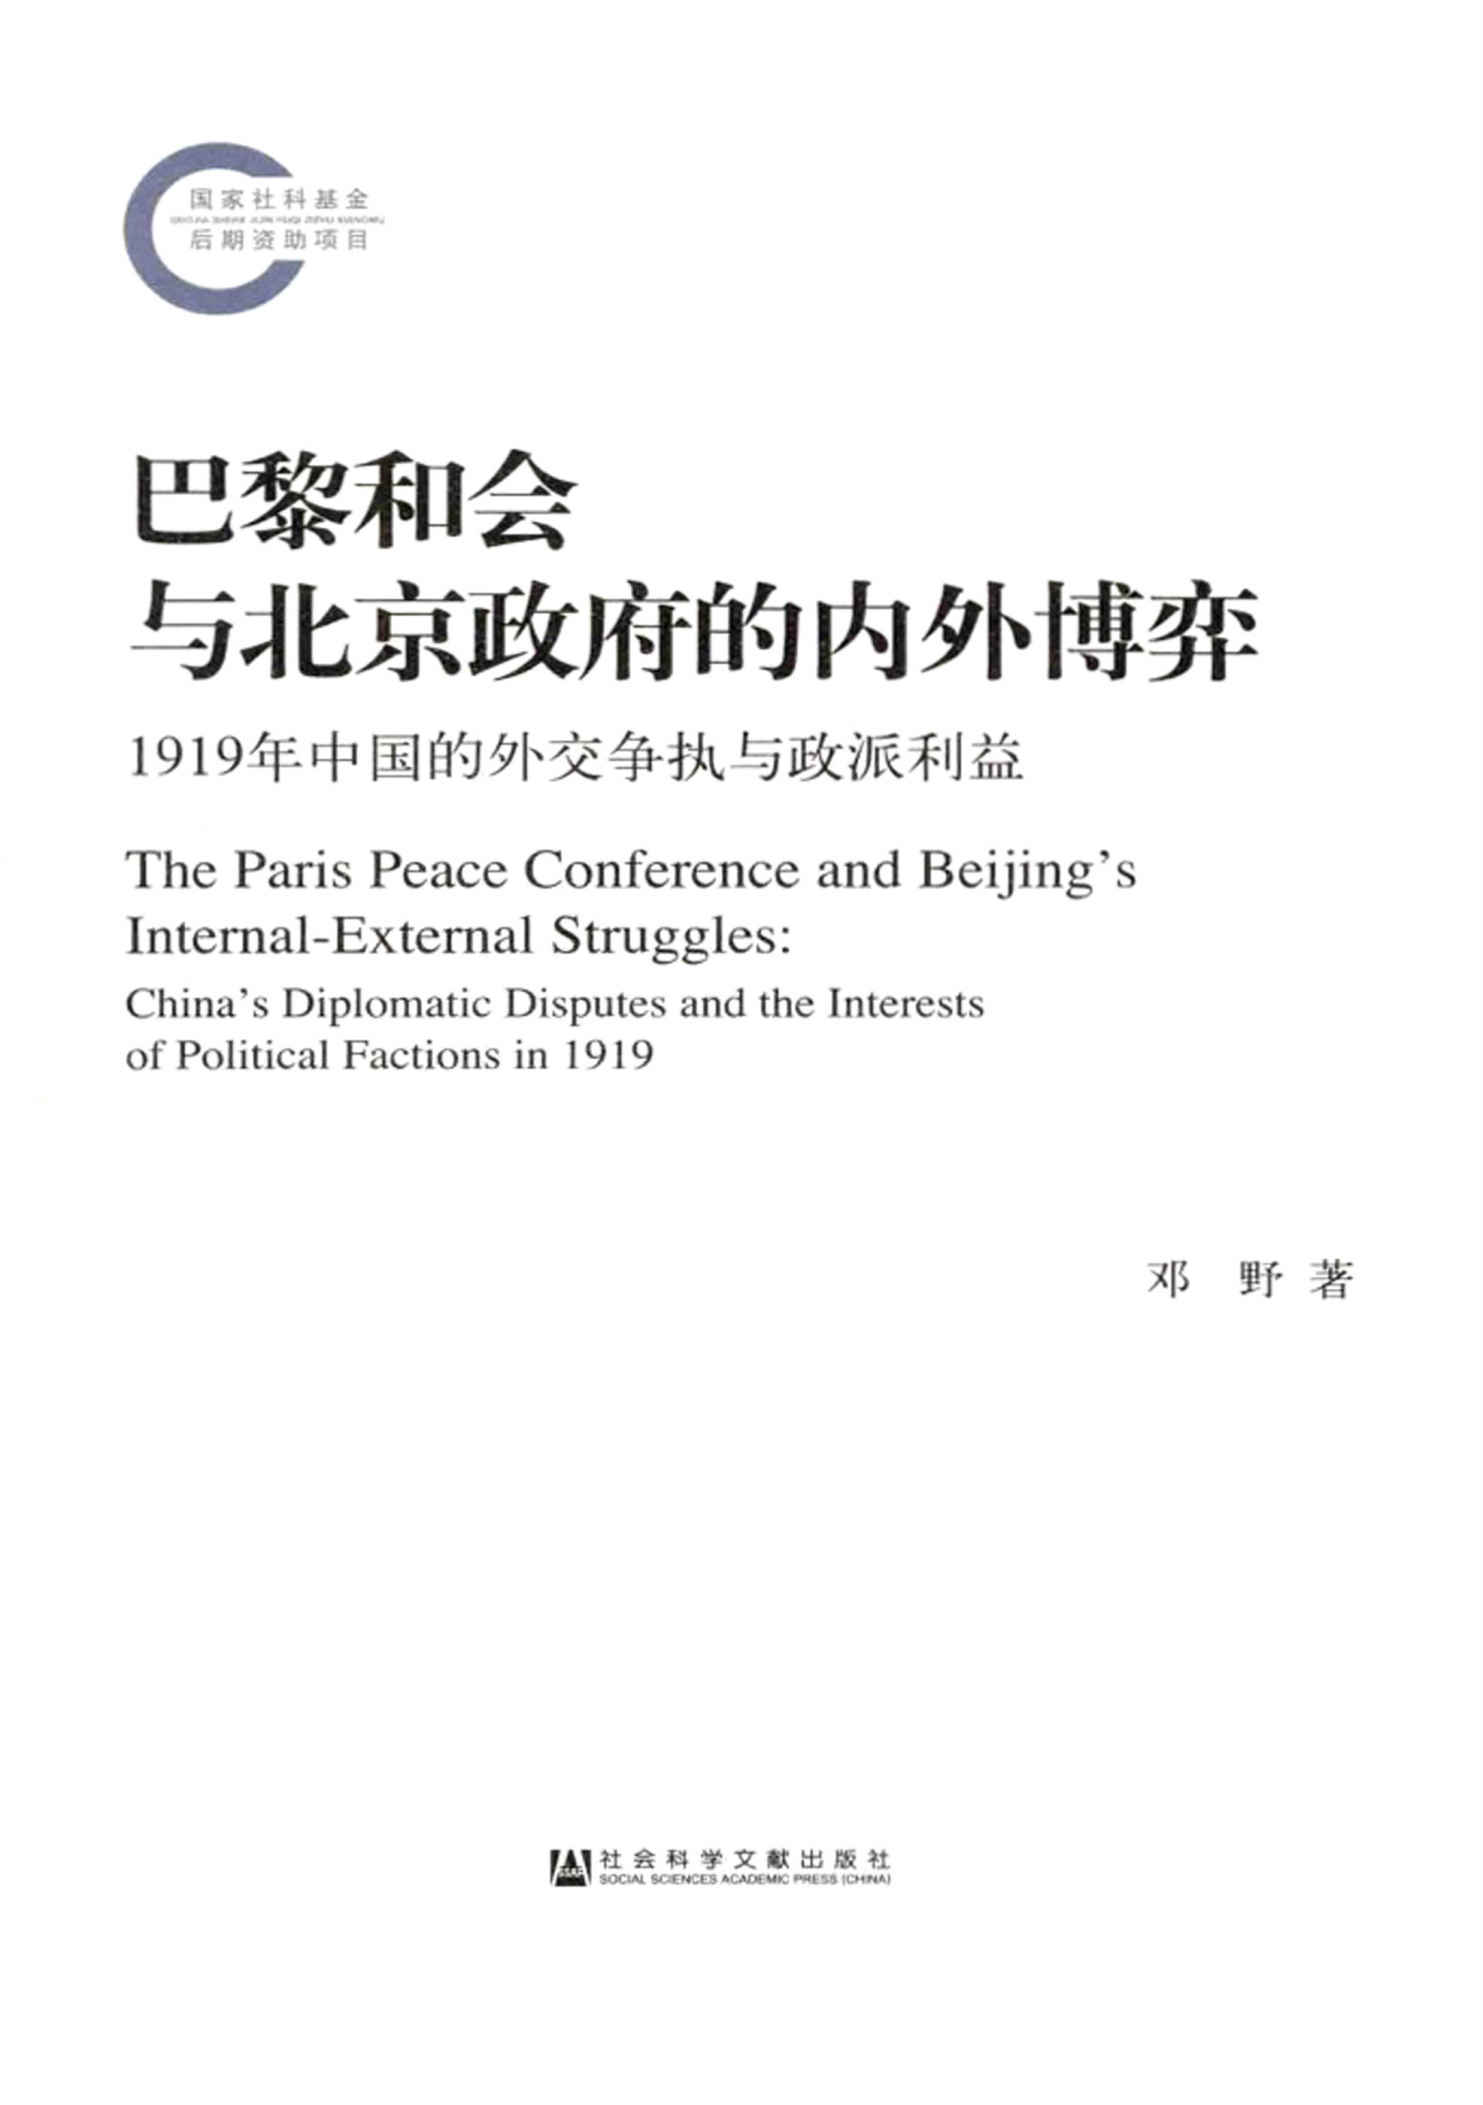 巴黎和会与北京政府的内外博弈：1919年中国的外交争执与政派利益